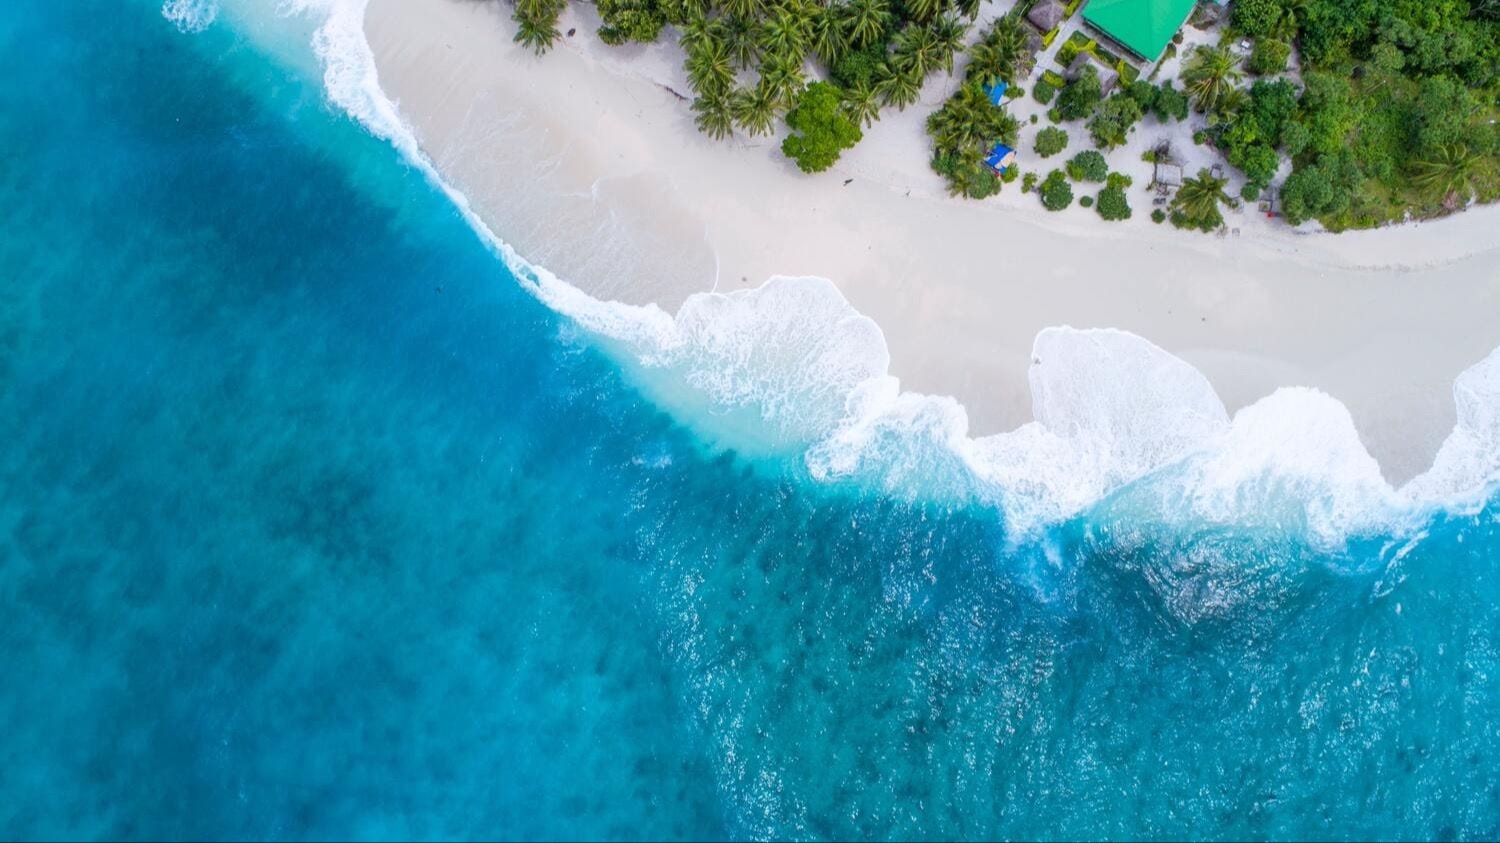 Мальдивы — идеальное направление для романтических каникул